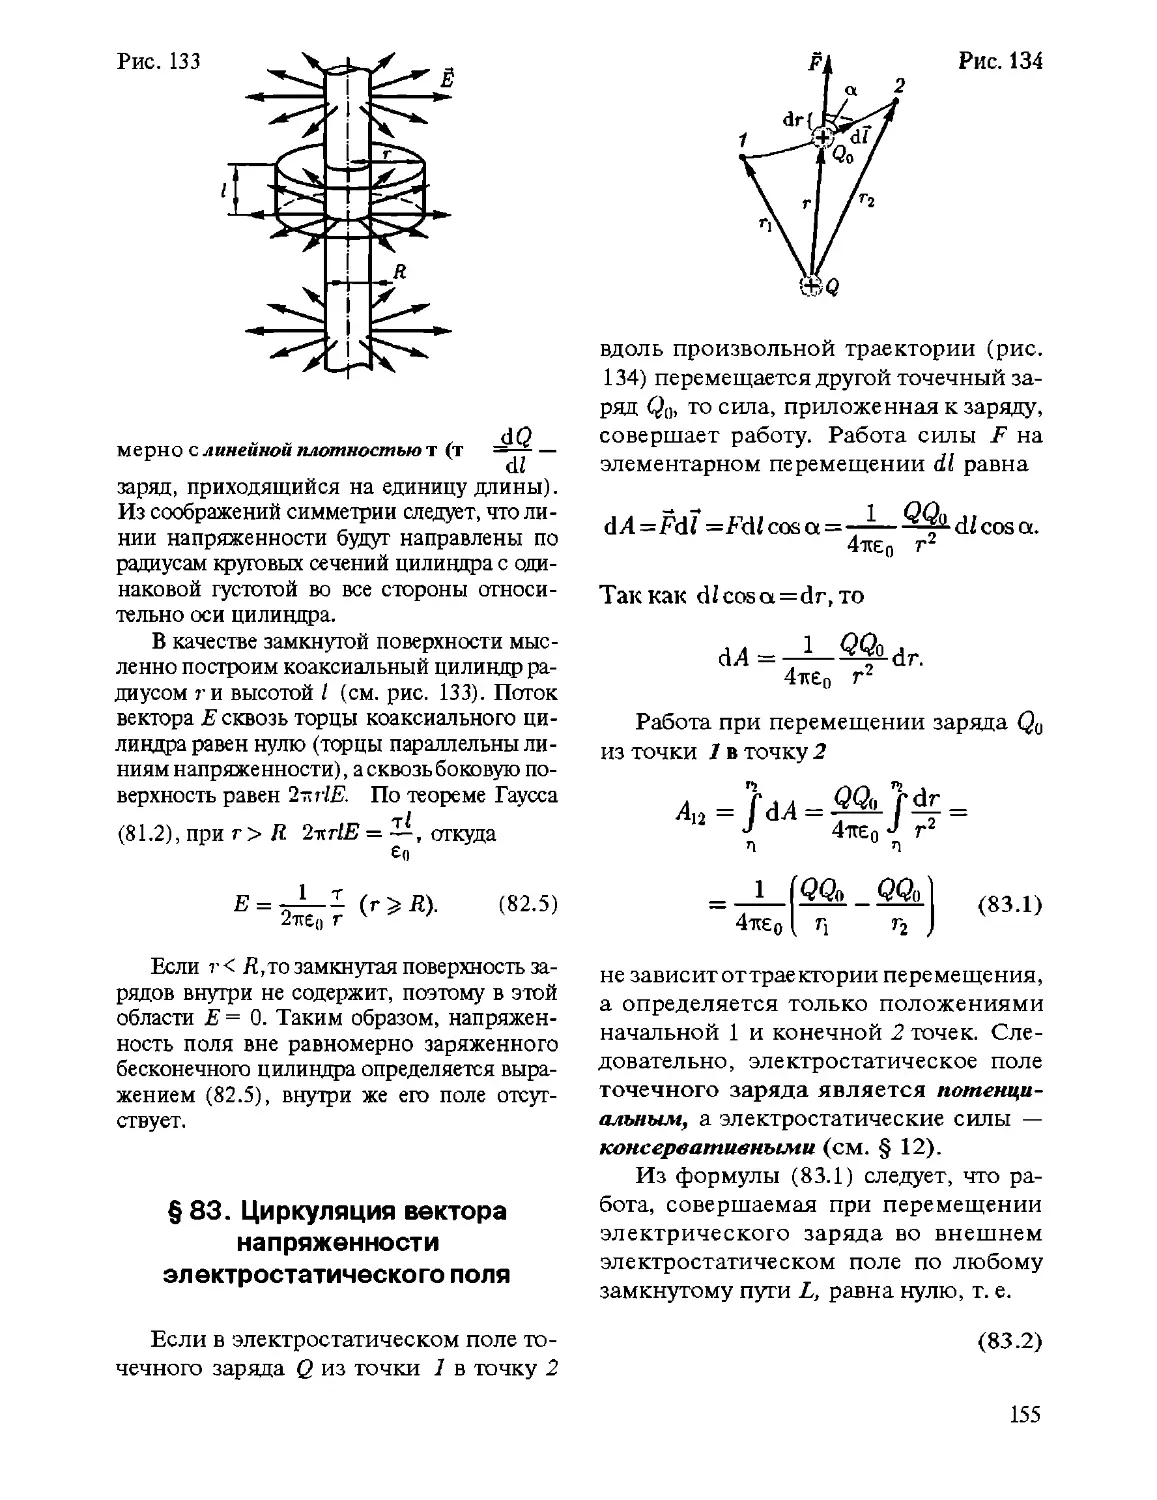 § 83. Циркуляция вектора напряженности электростатического поля